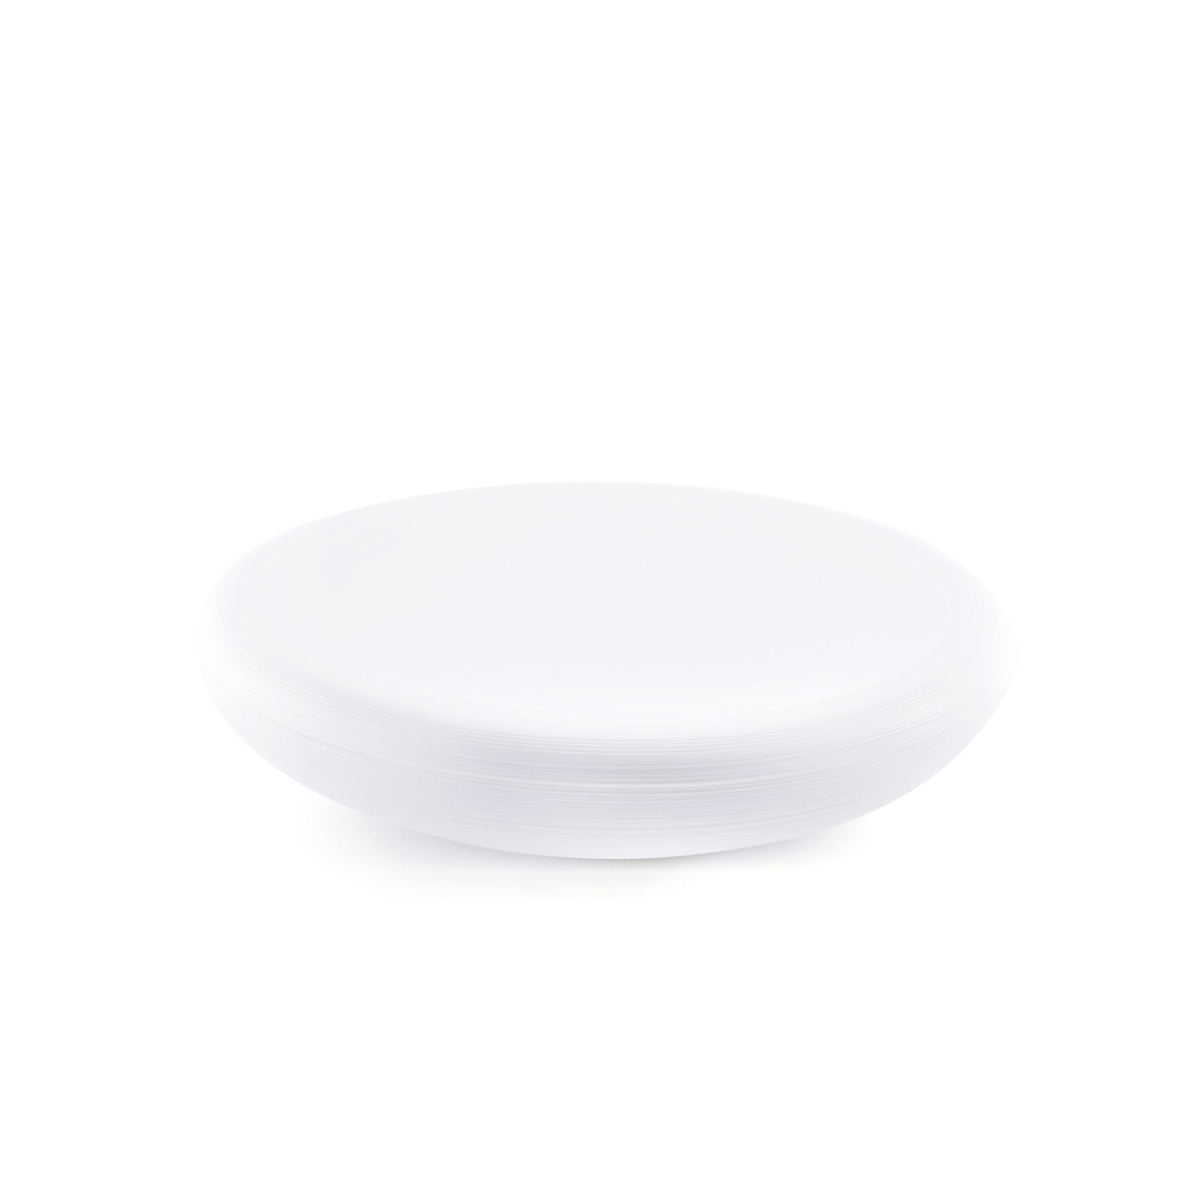 HEMISPHERE Blanc Satiné - Assiette plate Bubble